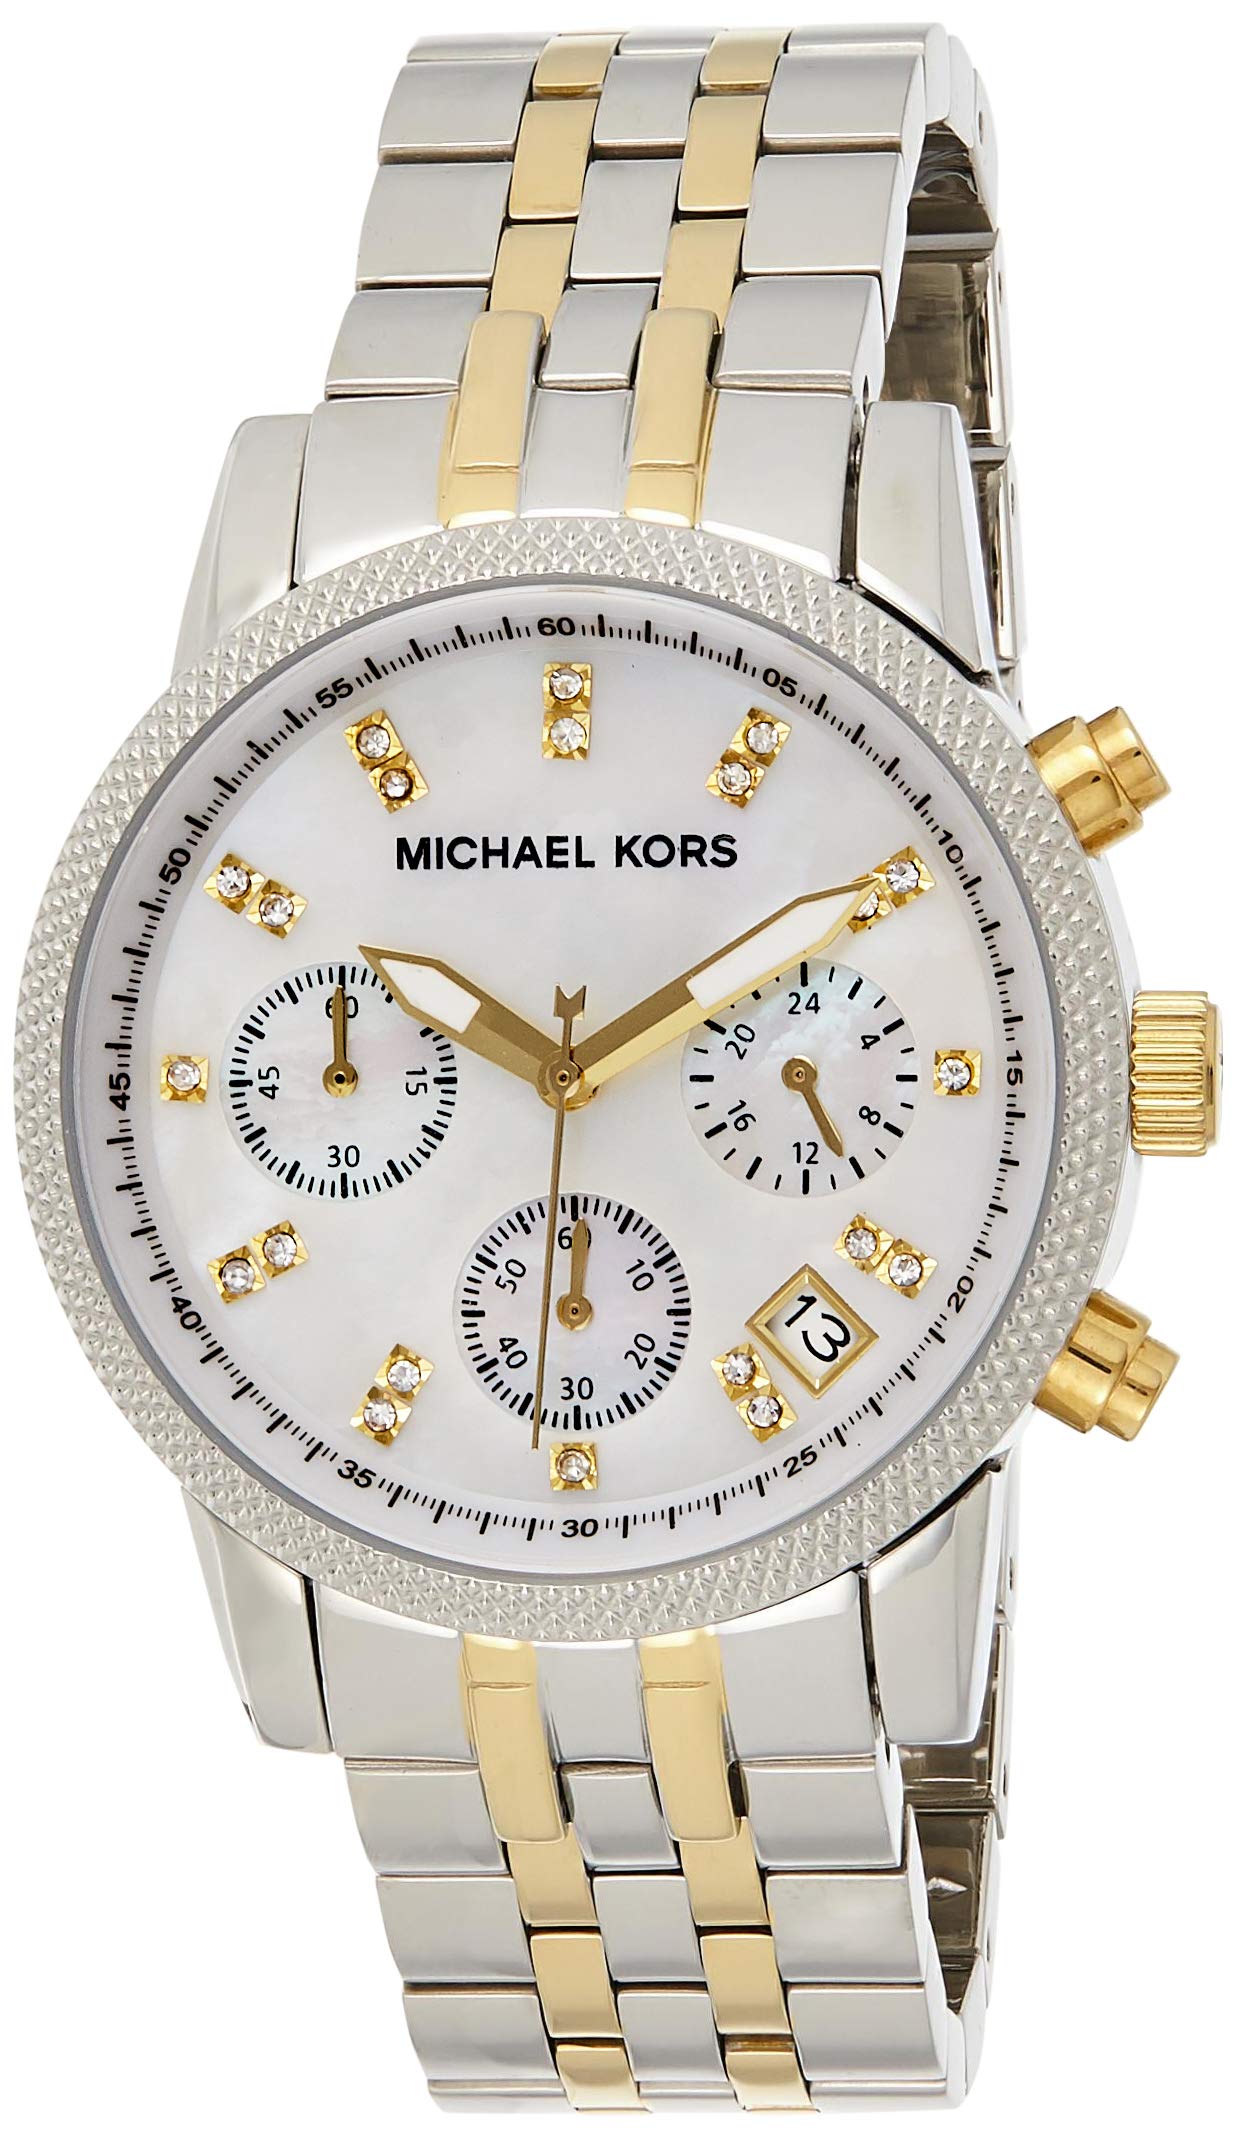 Michael Kors Ritz Chronograph White Dial Two Tone Steel Strap Watch for Women - MK5057